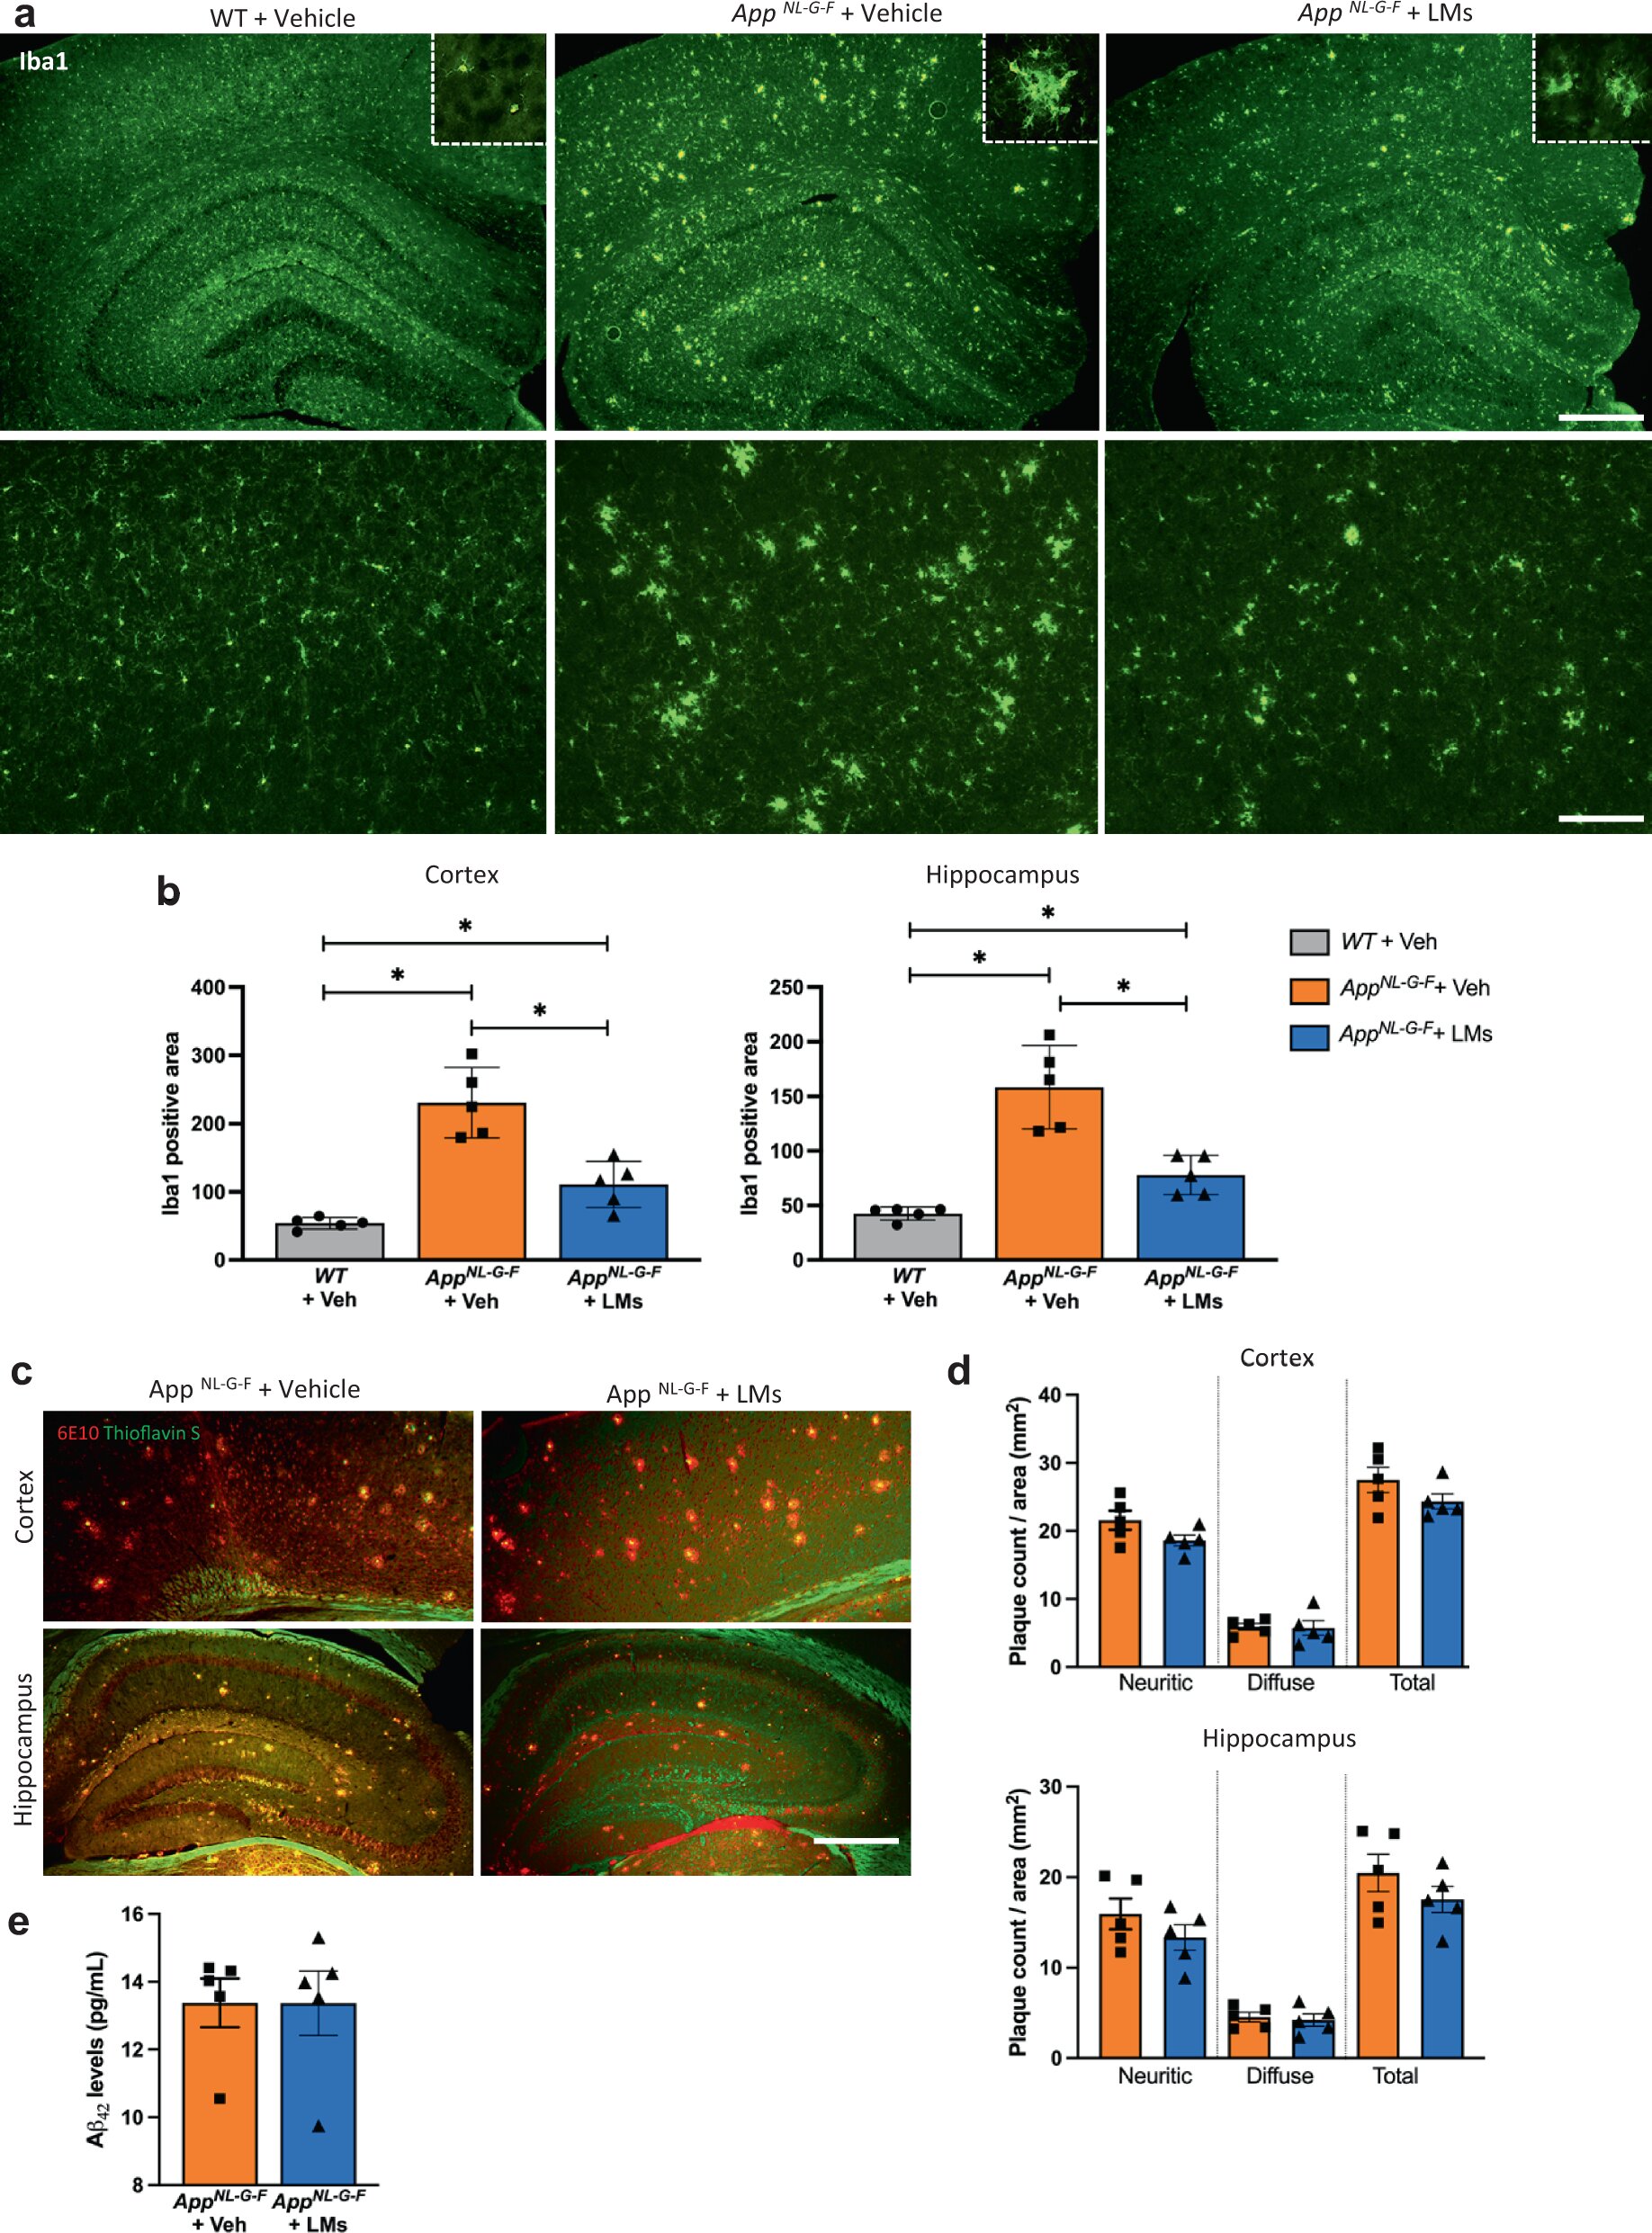 Badanie pokazuje, że Rx nosowy zatrzymuje zaniki pamięci w eksperymentalnym modelu choroby Alzheimera